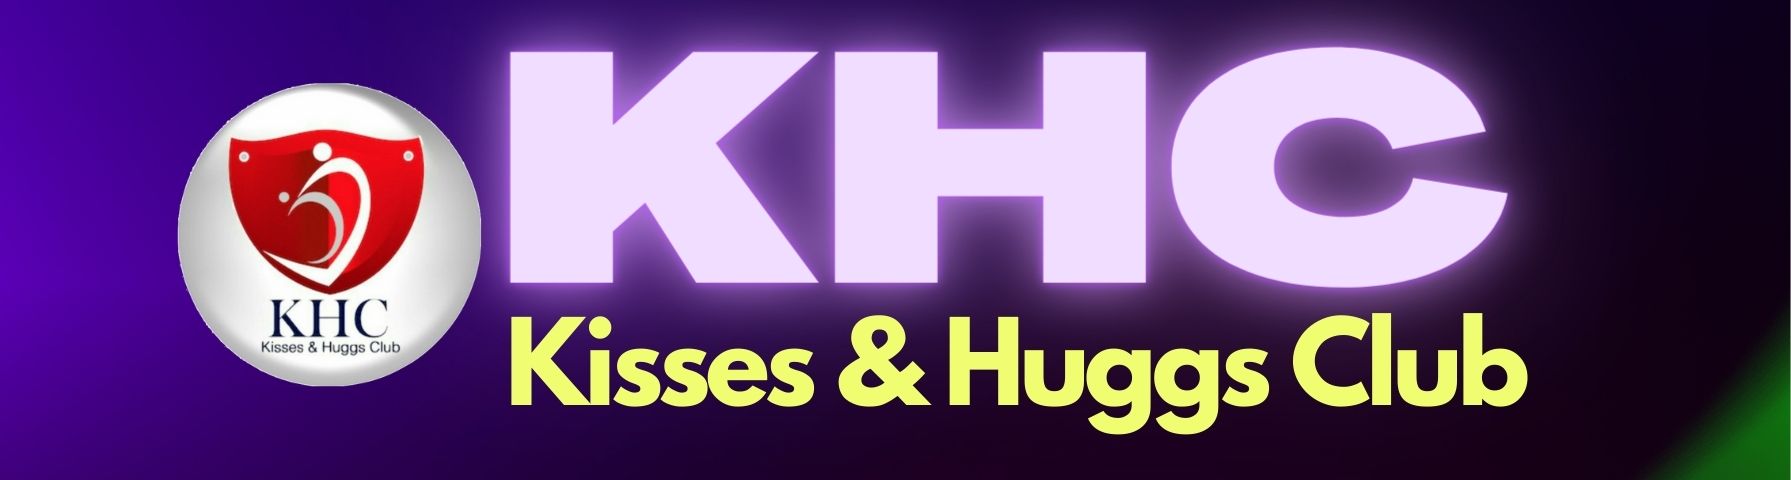 Kisses & Huggs Club